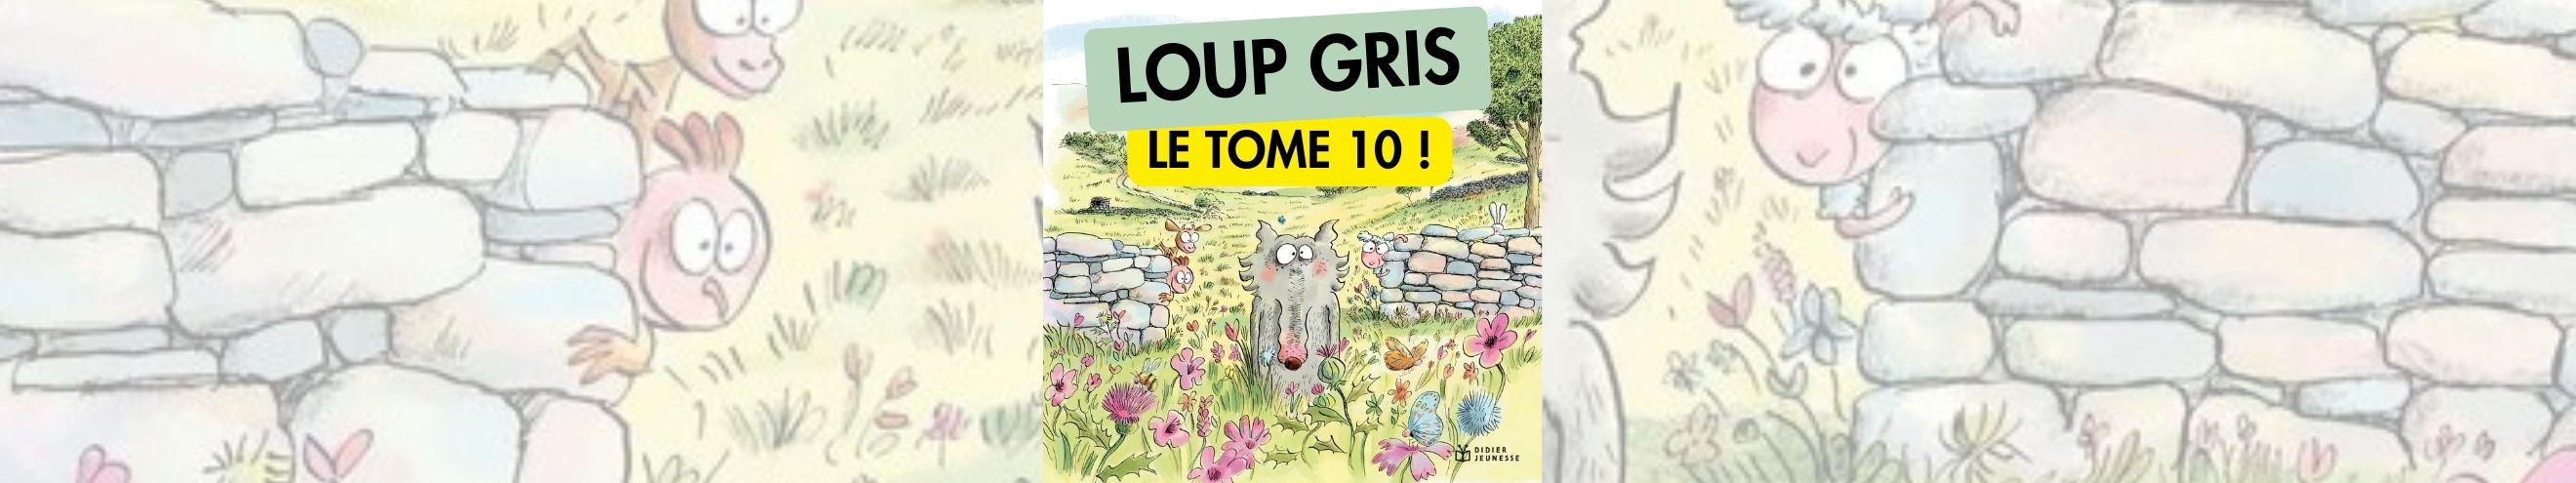 Lous Gris, le tome 10